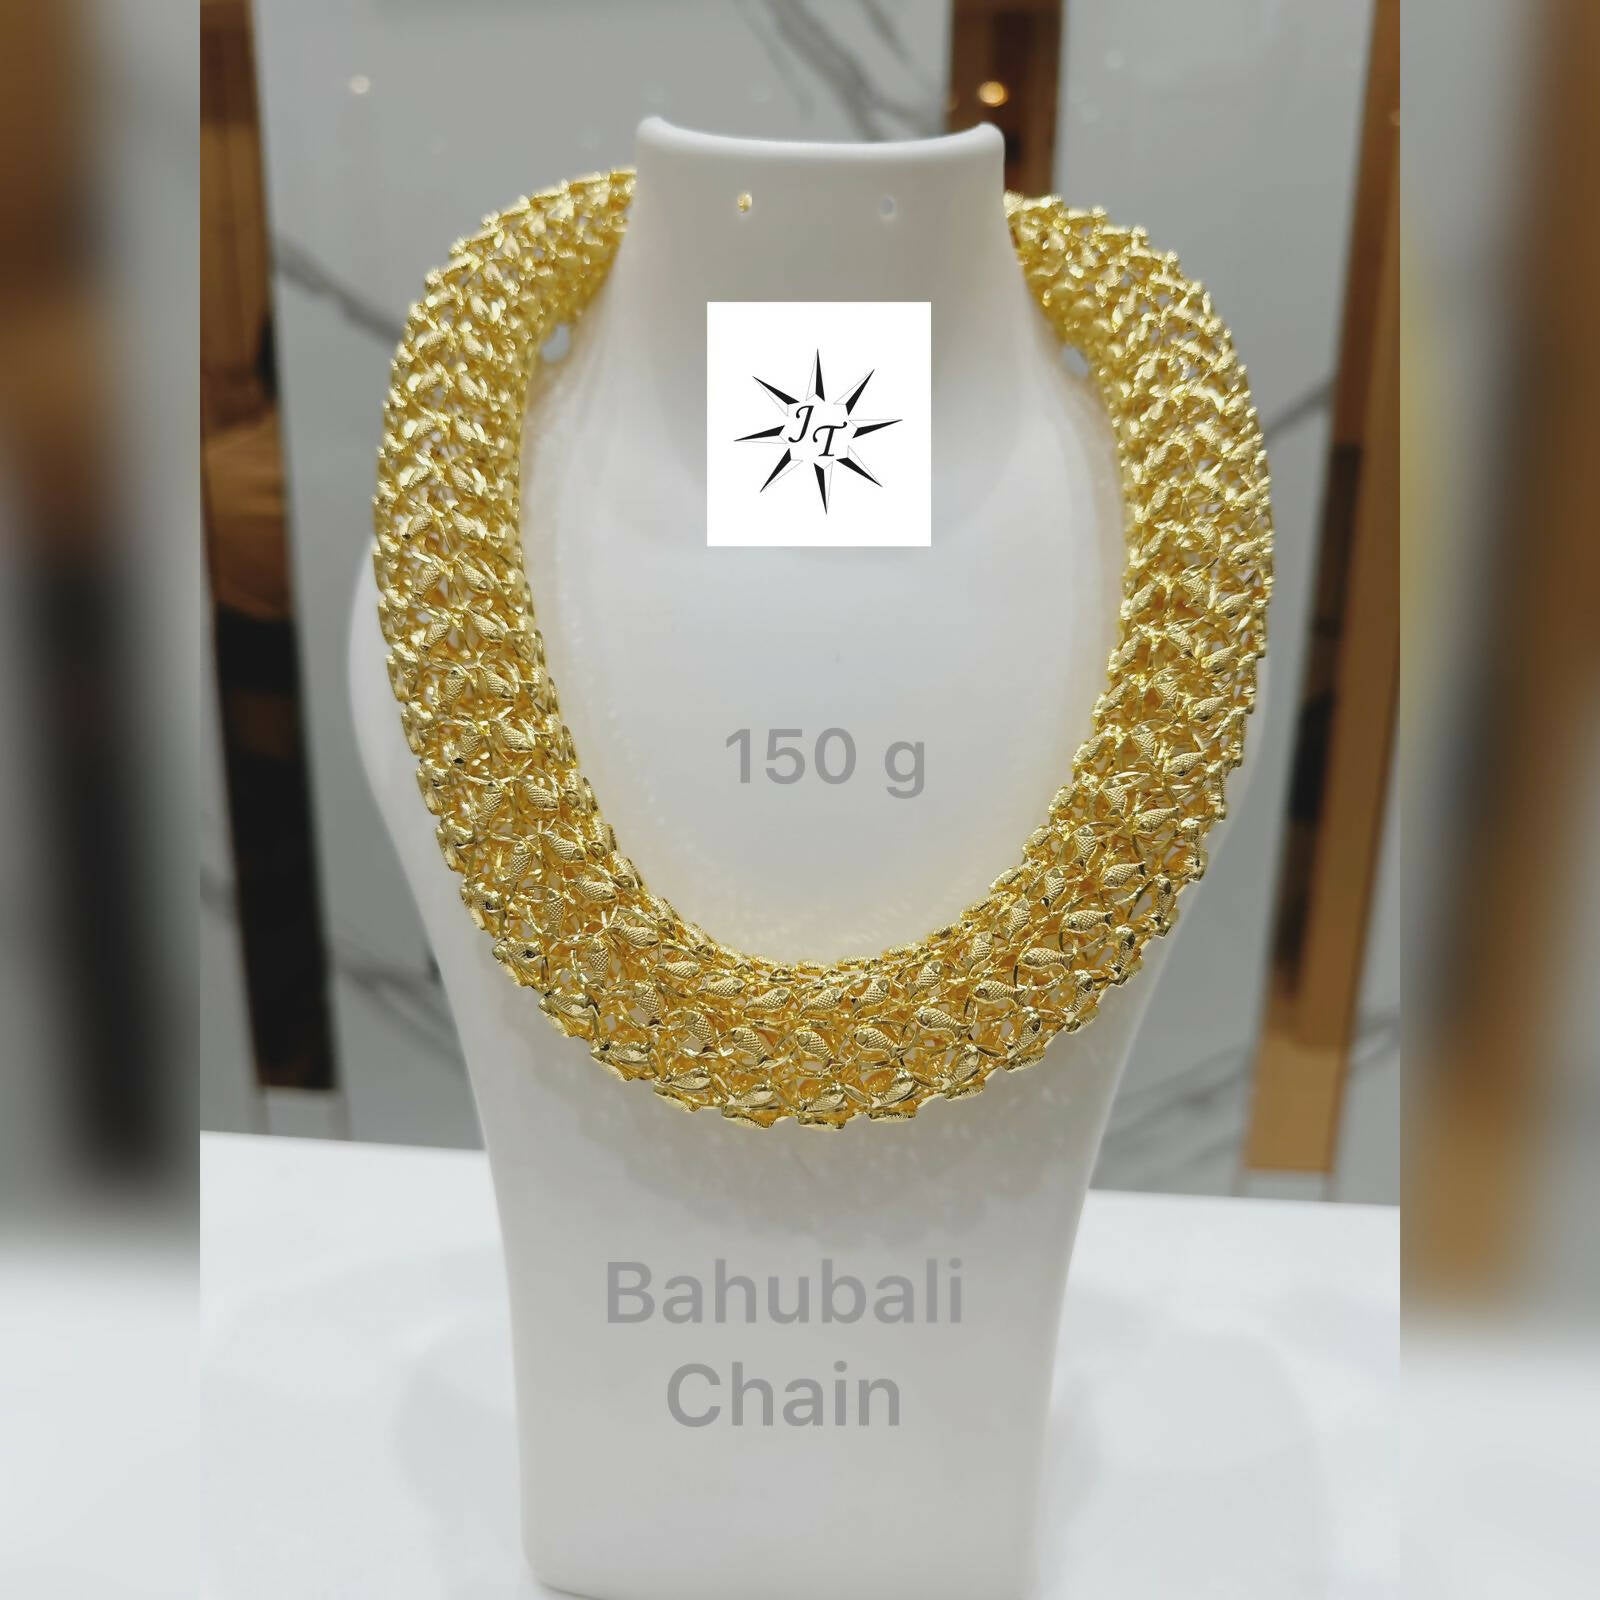 Bahubali Chain Sarafa Bazar India